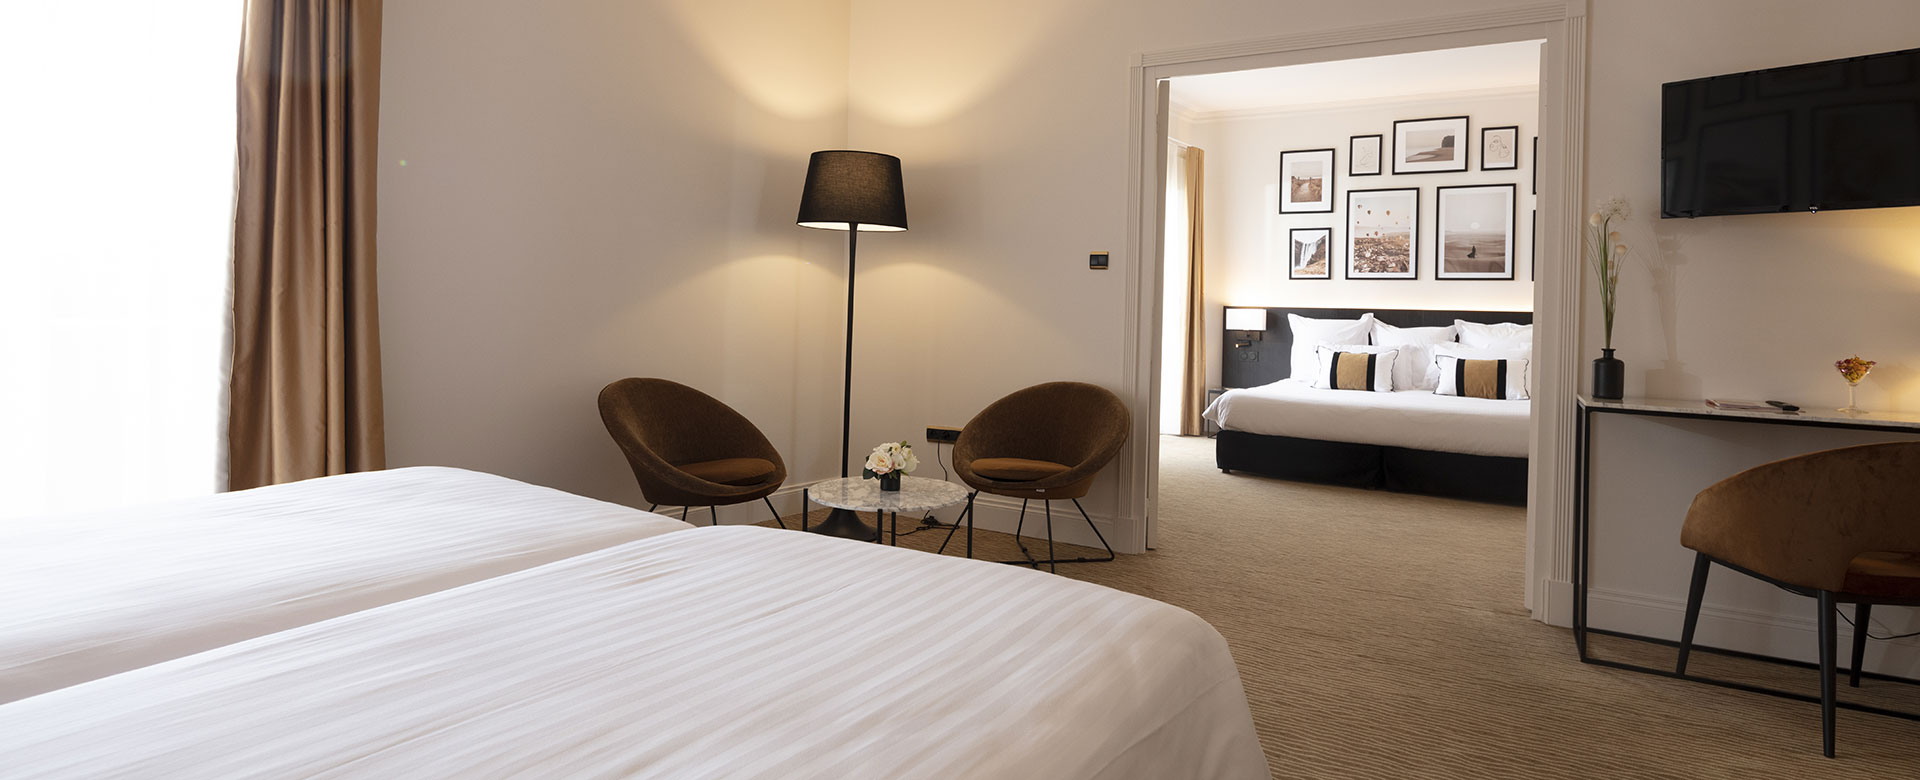 Suite avec 2 lits une personne du Palmyra Golf, hôtel 4 étoiles dans l’Hérault